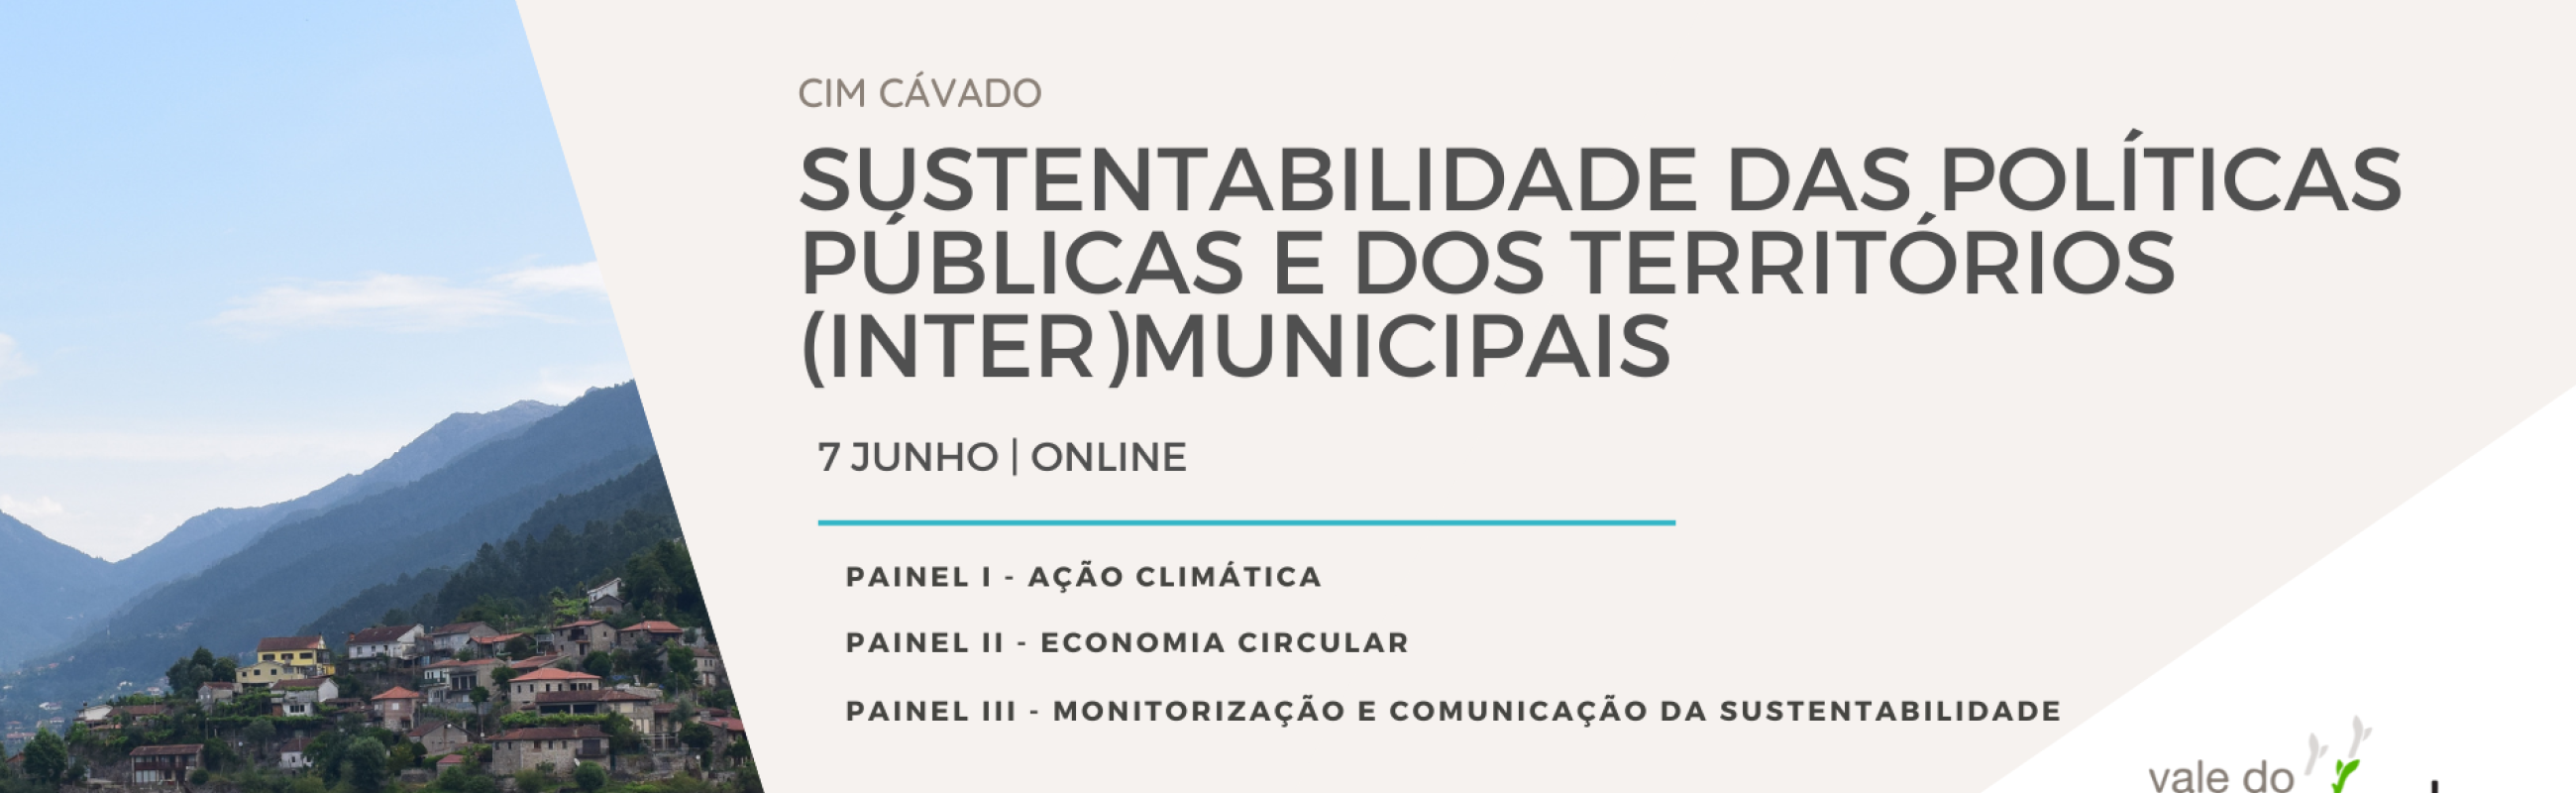 CIM Cávado CESOP-Local Sustentabilidade das políticas públicas e dos territórios (inter)municipais